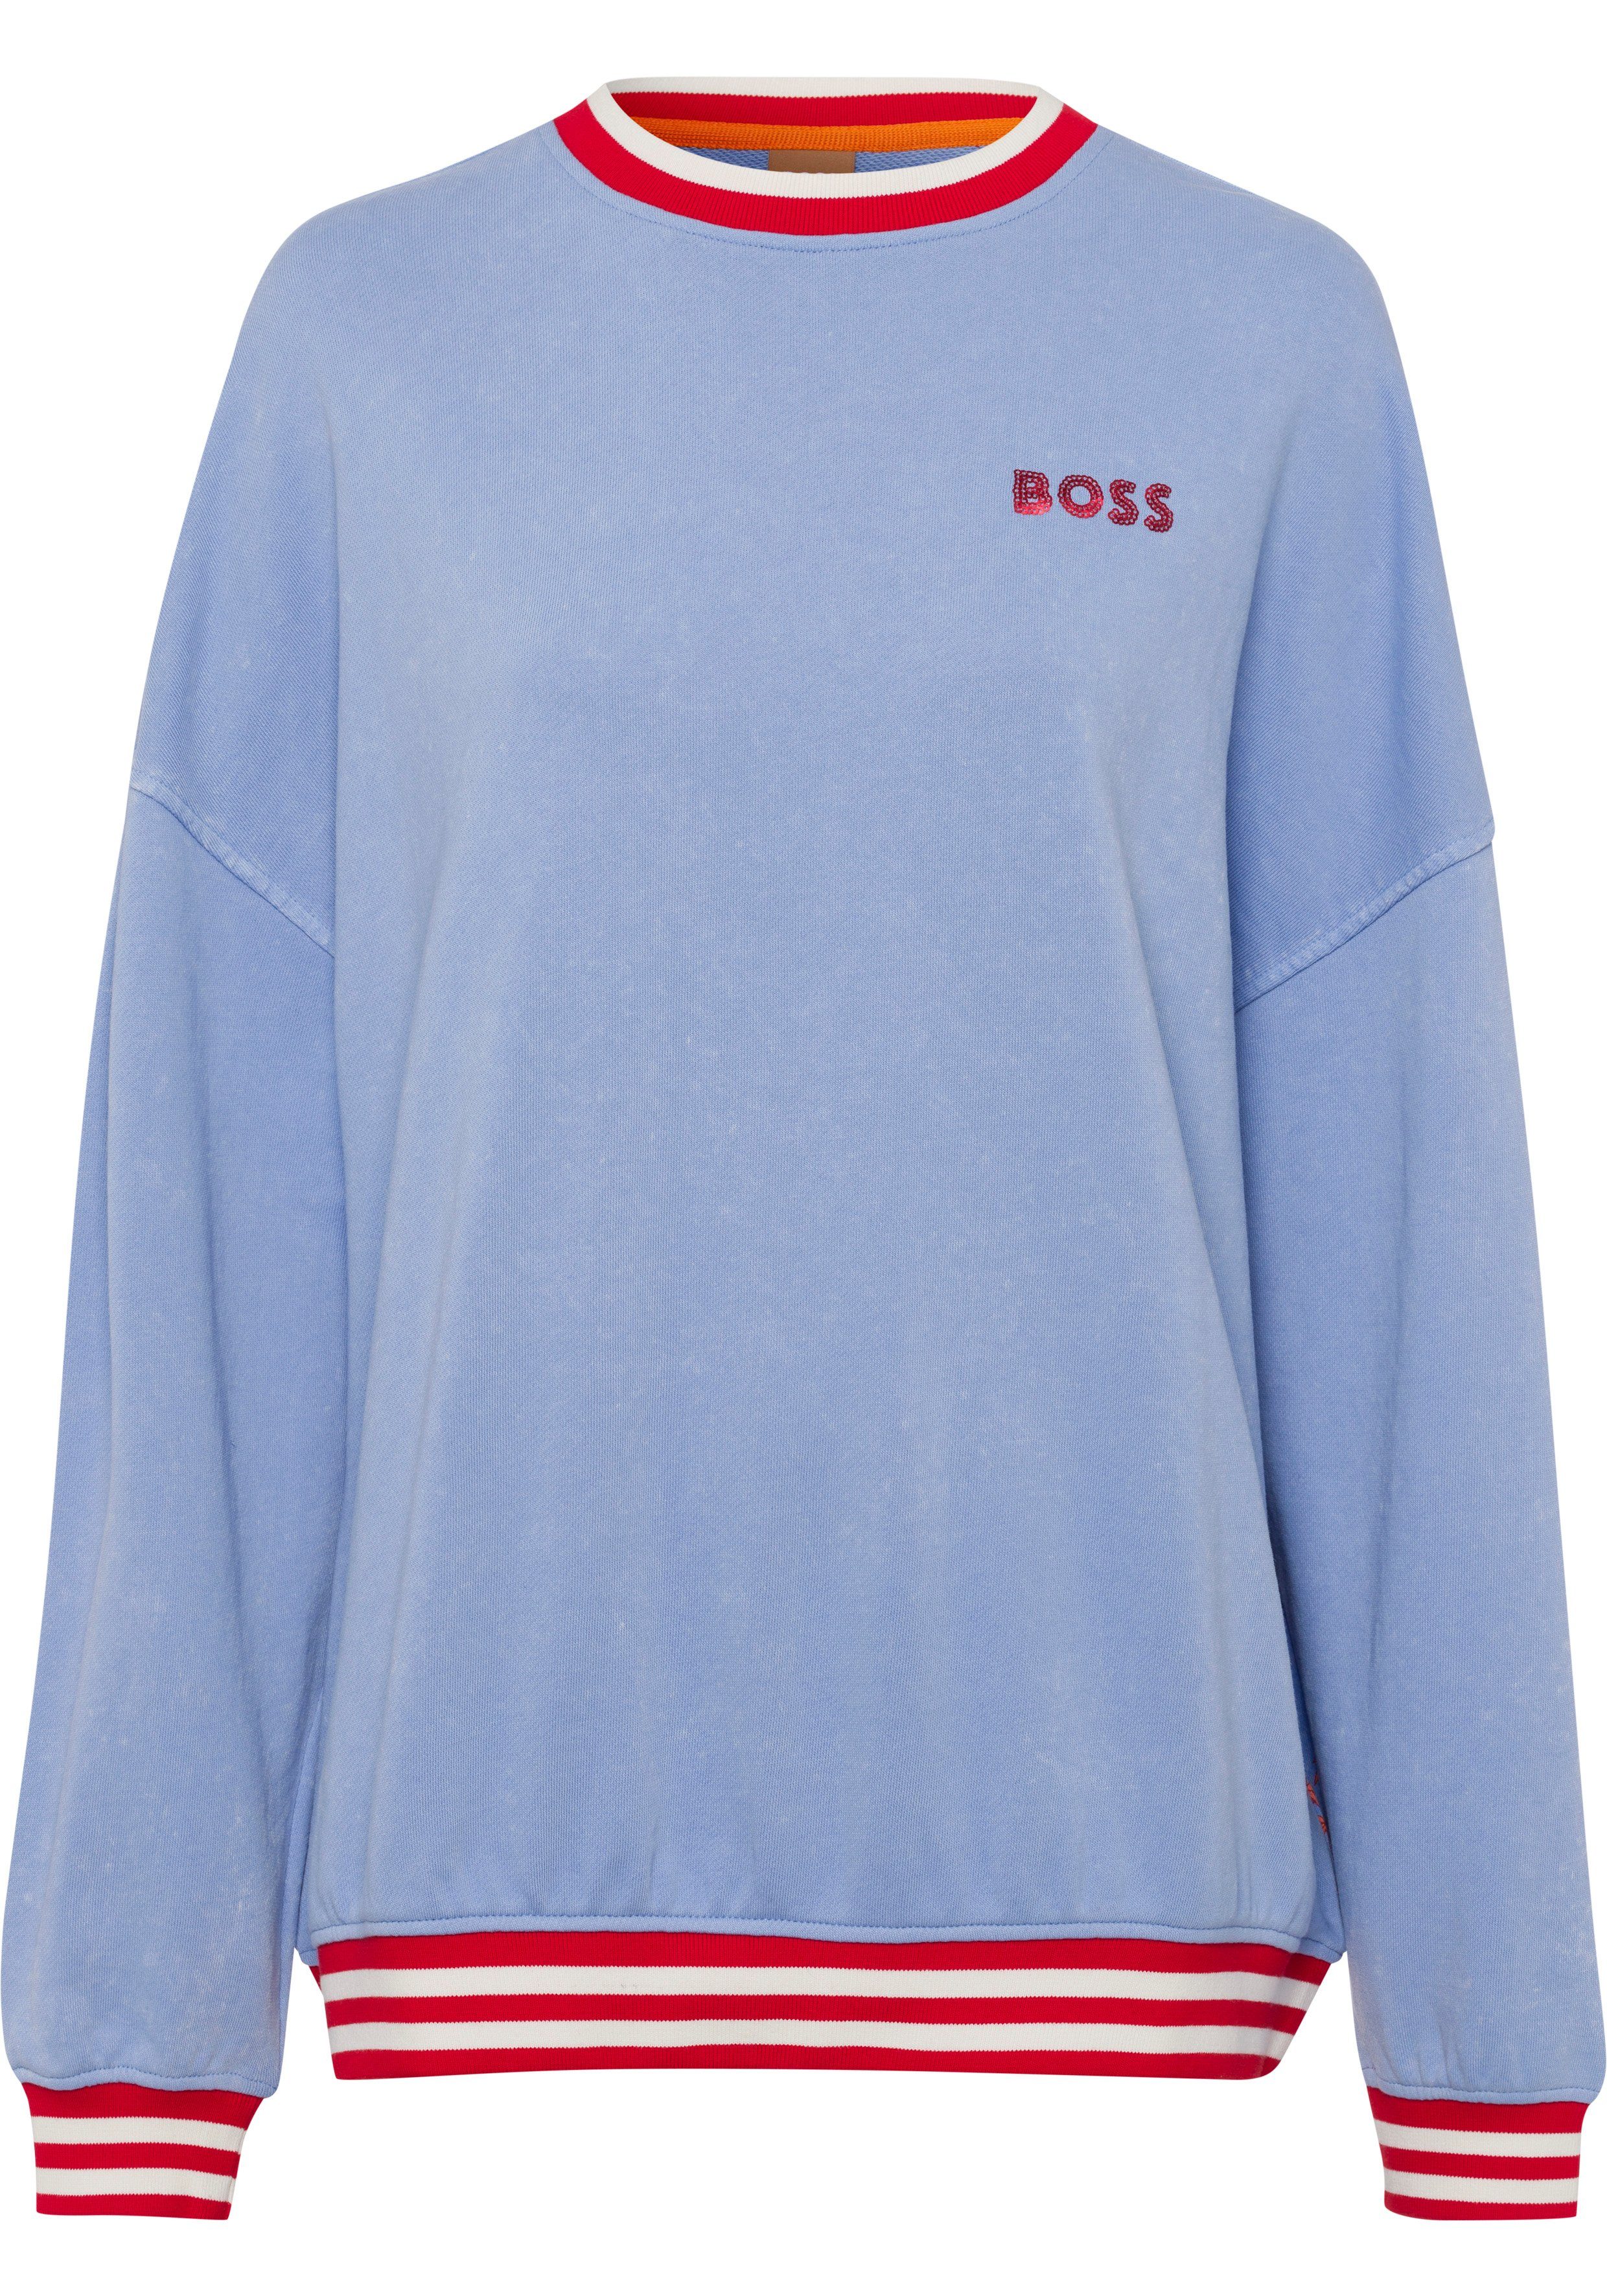 BOSS Logostickereien mit ORANGE Sweatshirt